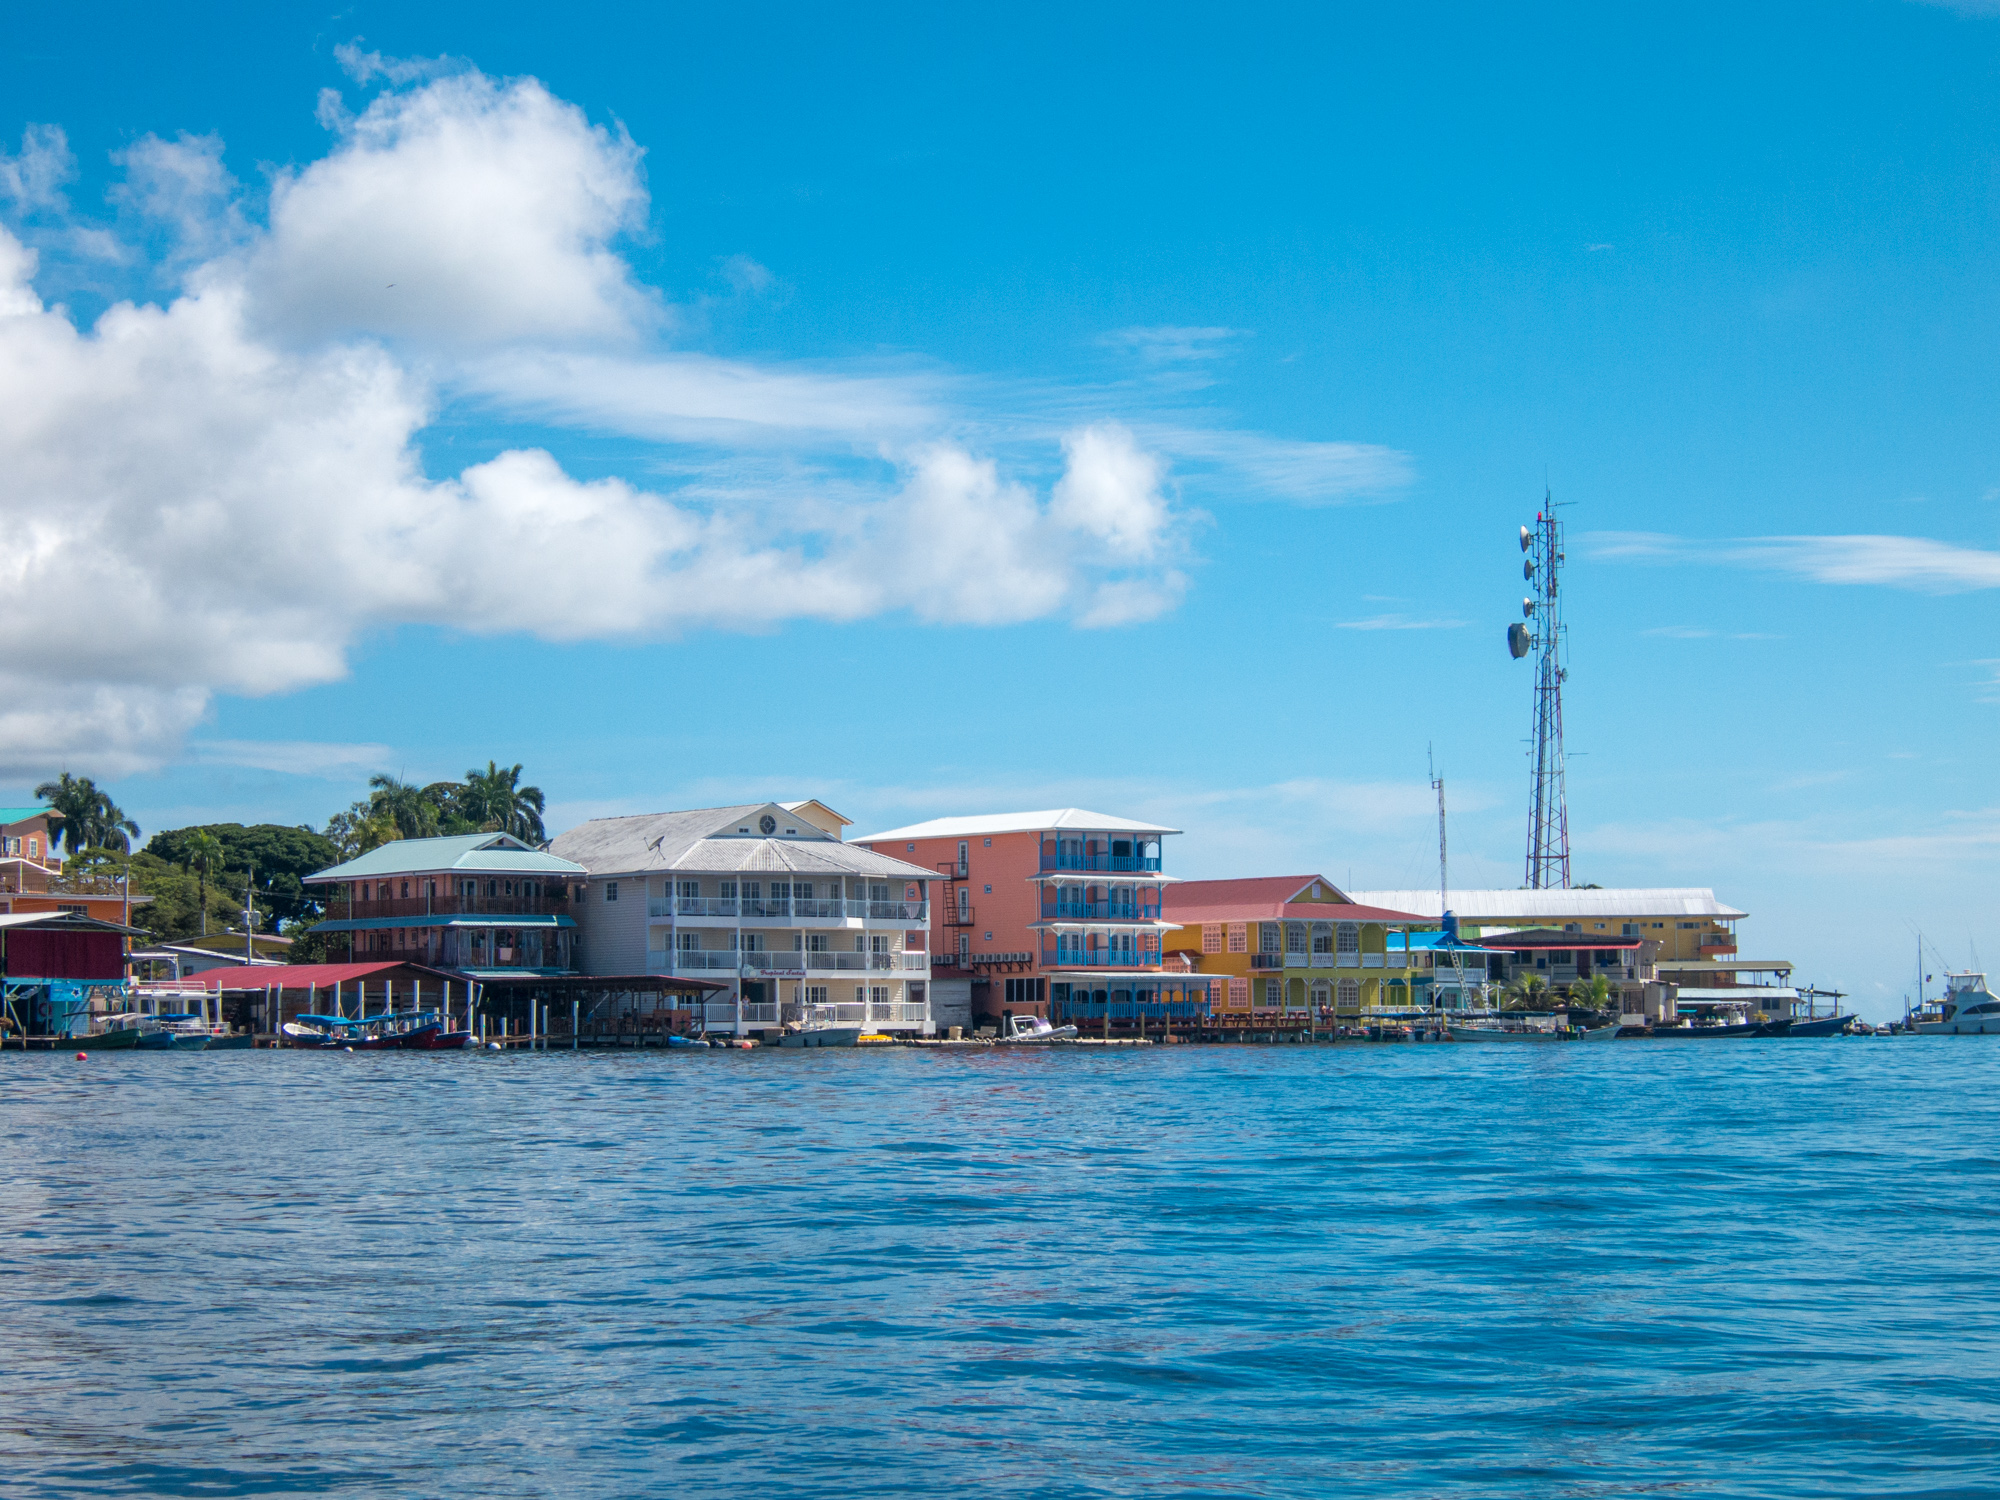 Bocas Town